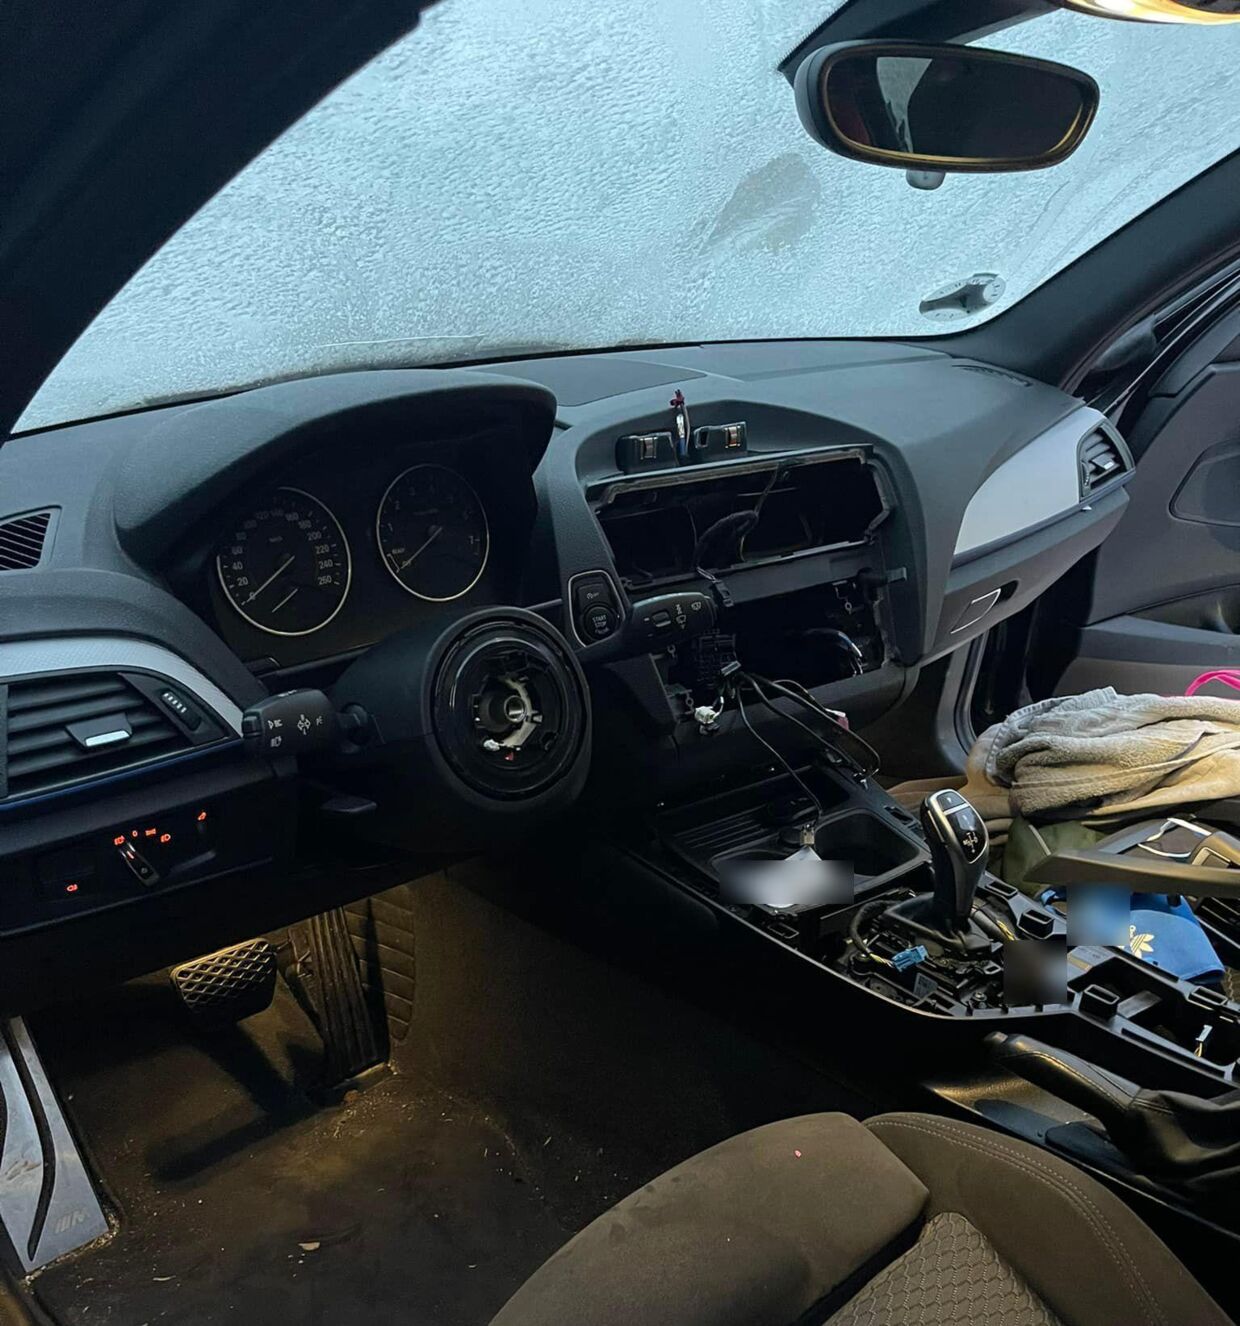 Fredag morgen kom Jacob Kilsgaards kone ud til en ubrugelig bil. I løbet af natten var både rattet og GPS-styresystemet blevet stjålet fra deres BMW. Foto: Privat. 